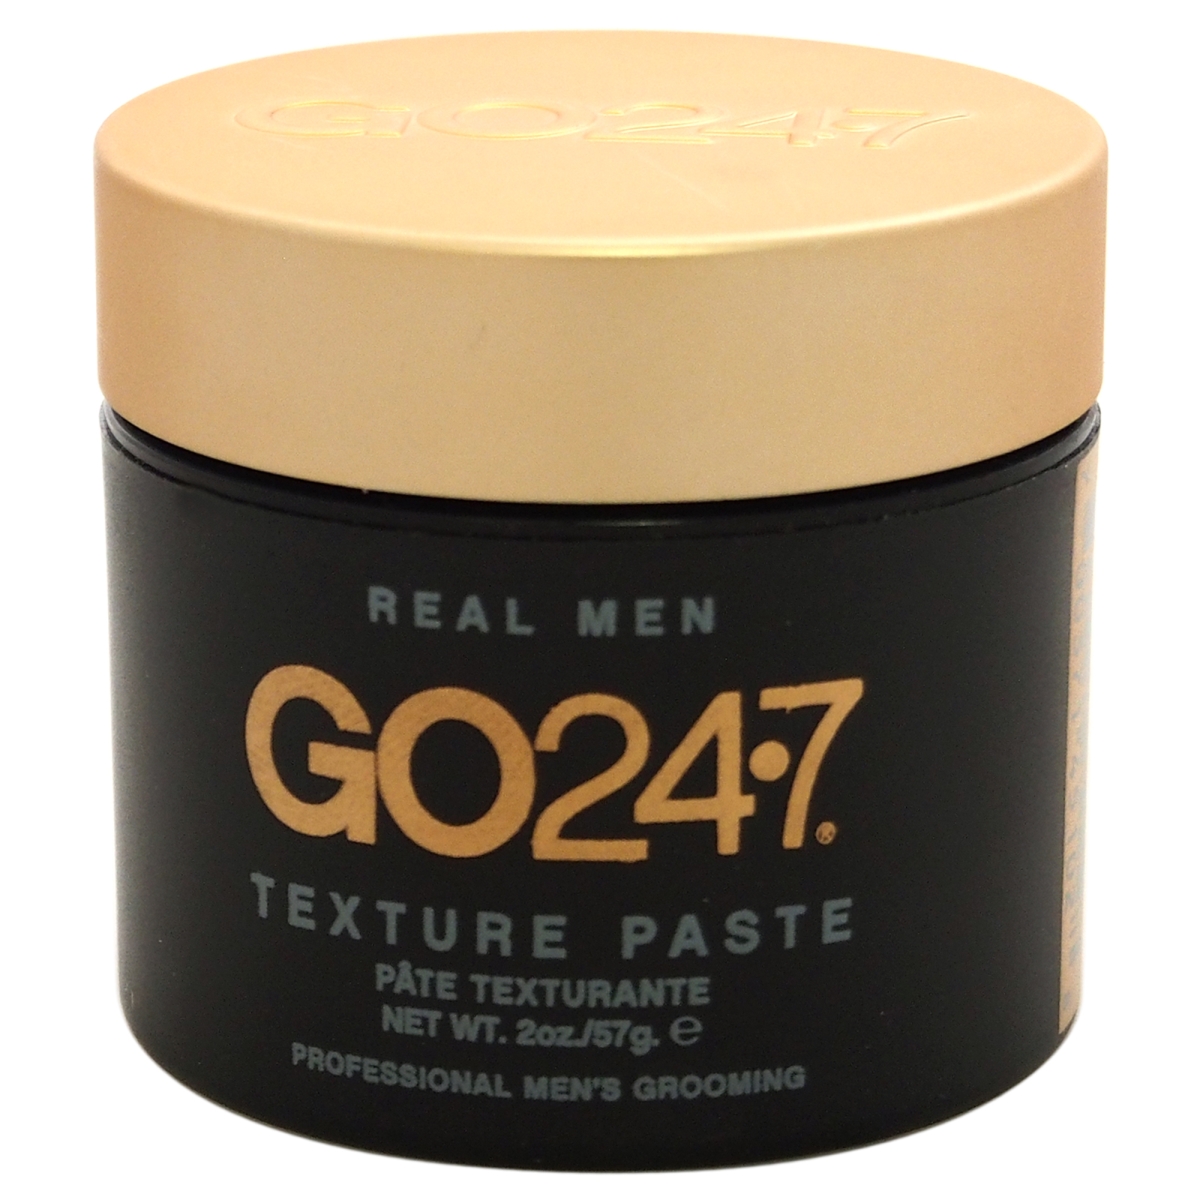 M-hc-1270 Real Men 2 Oz Texture Paste For Men